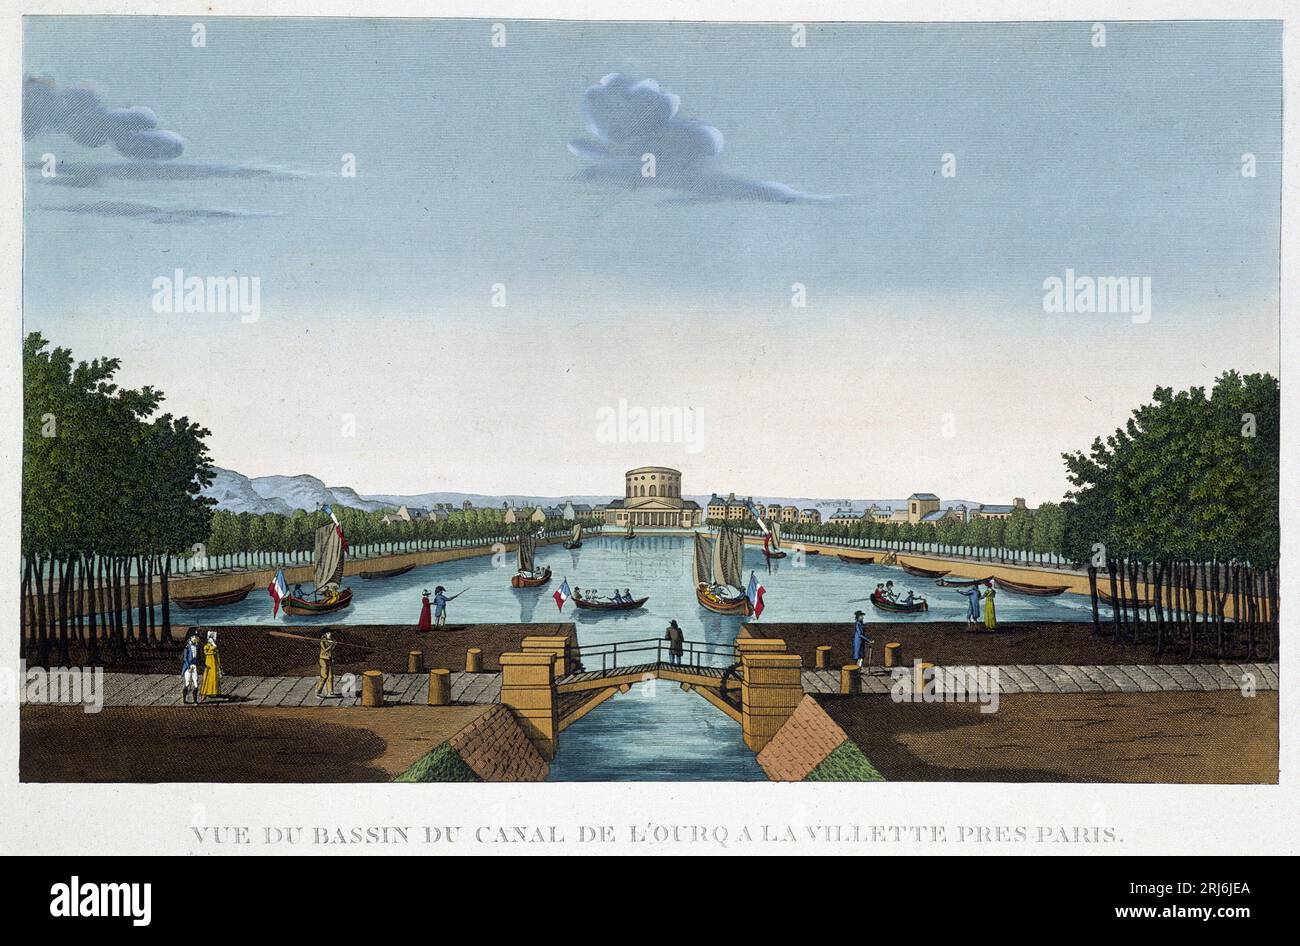 Canal de l'Ourcq a la Villette - dans 'Vues de Paris' par Courvoisier, 1827 Banque D'Images